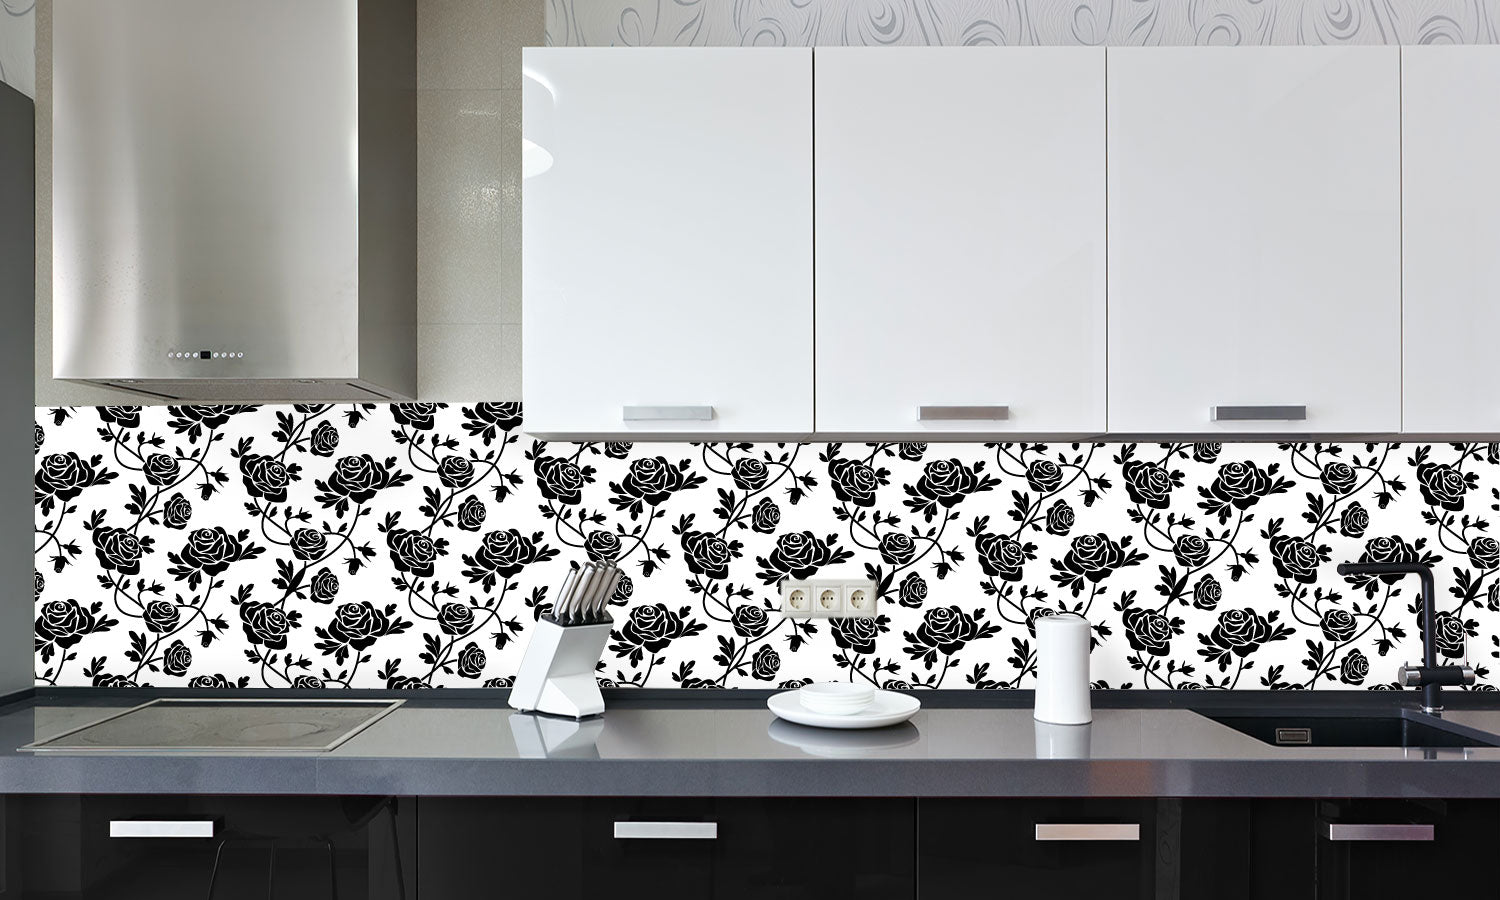 Kuhinjski paneli Black roses at white - Stekleni / PVC plošče / Pleksi steklo - s tiskom za kuhinjo, Stenske obloge PKU0352 - Life-decor.si